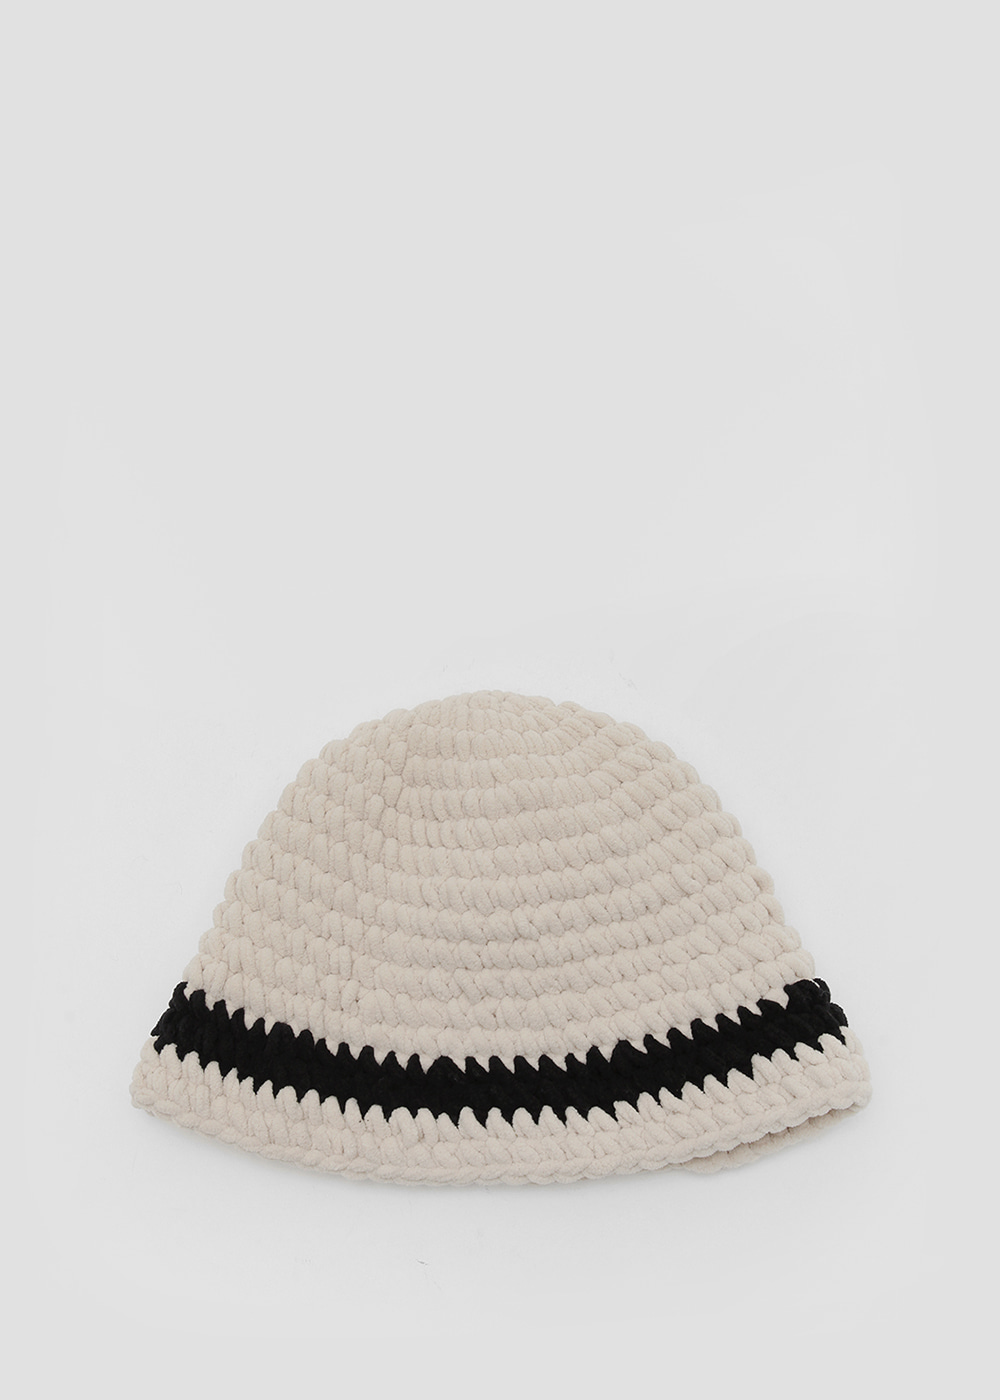 Neoprene knit bucket hat